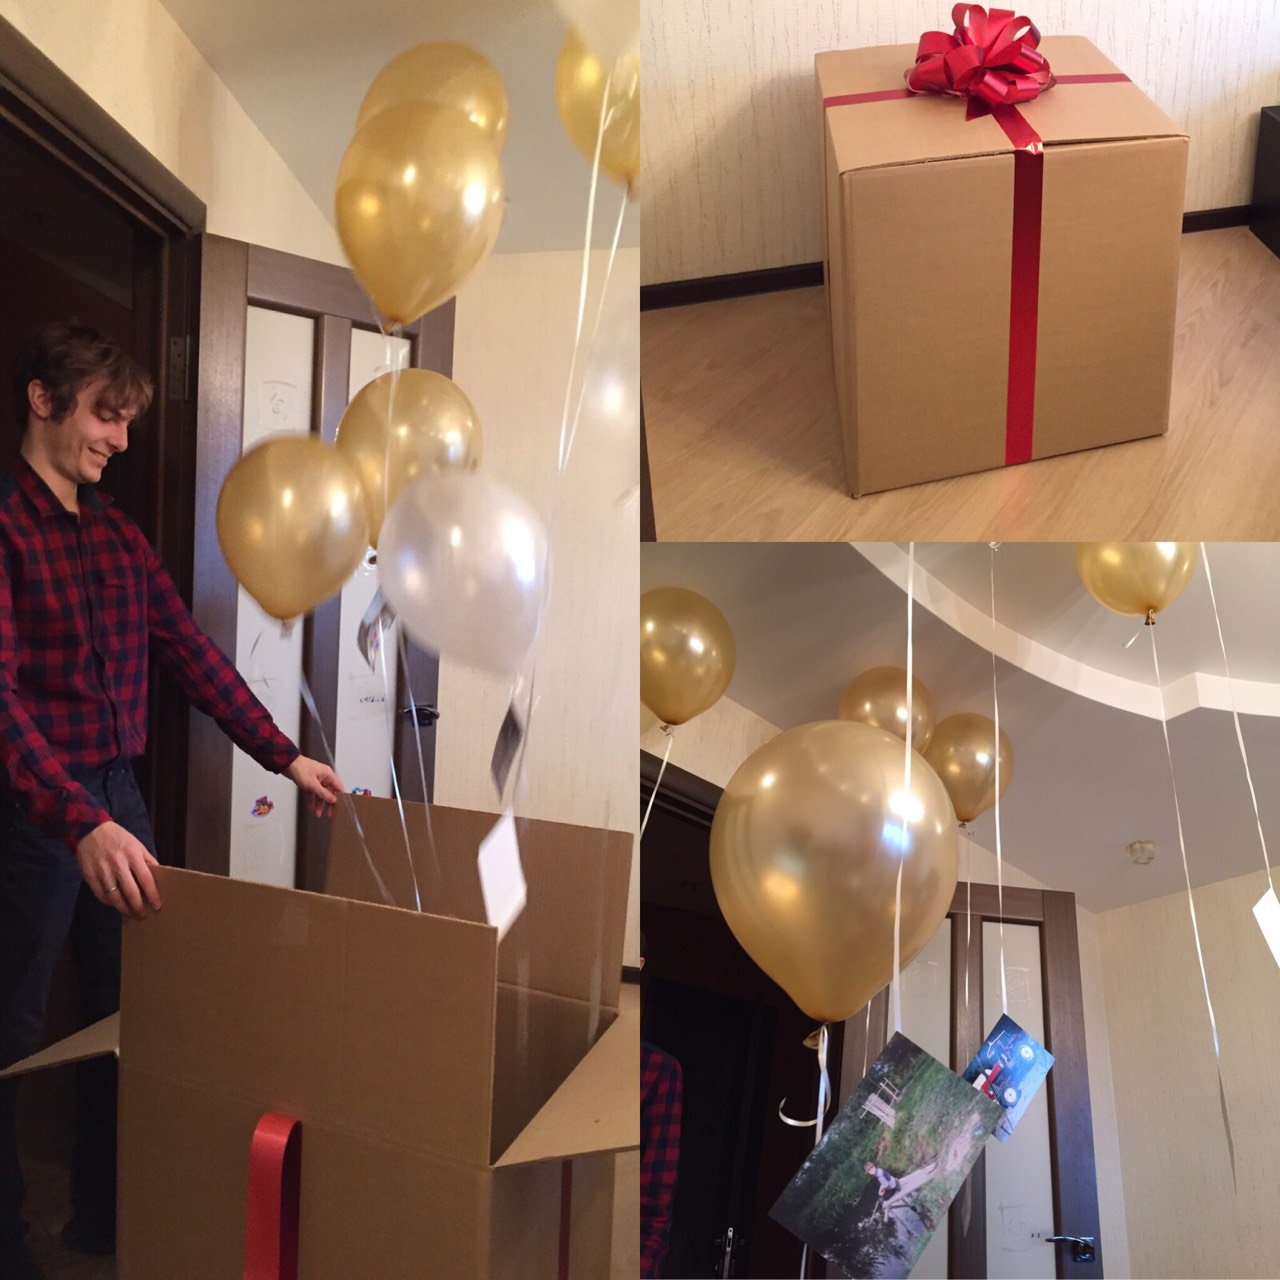 Сюрприз на день рождения. Огромная коробка для подарка с шарами. Сюрприз с шарами на день рождения. Большая подарочная коробка для шаров.